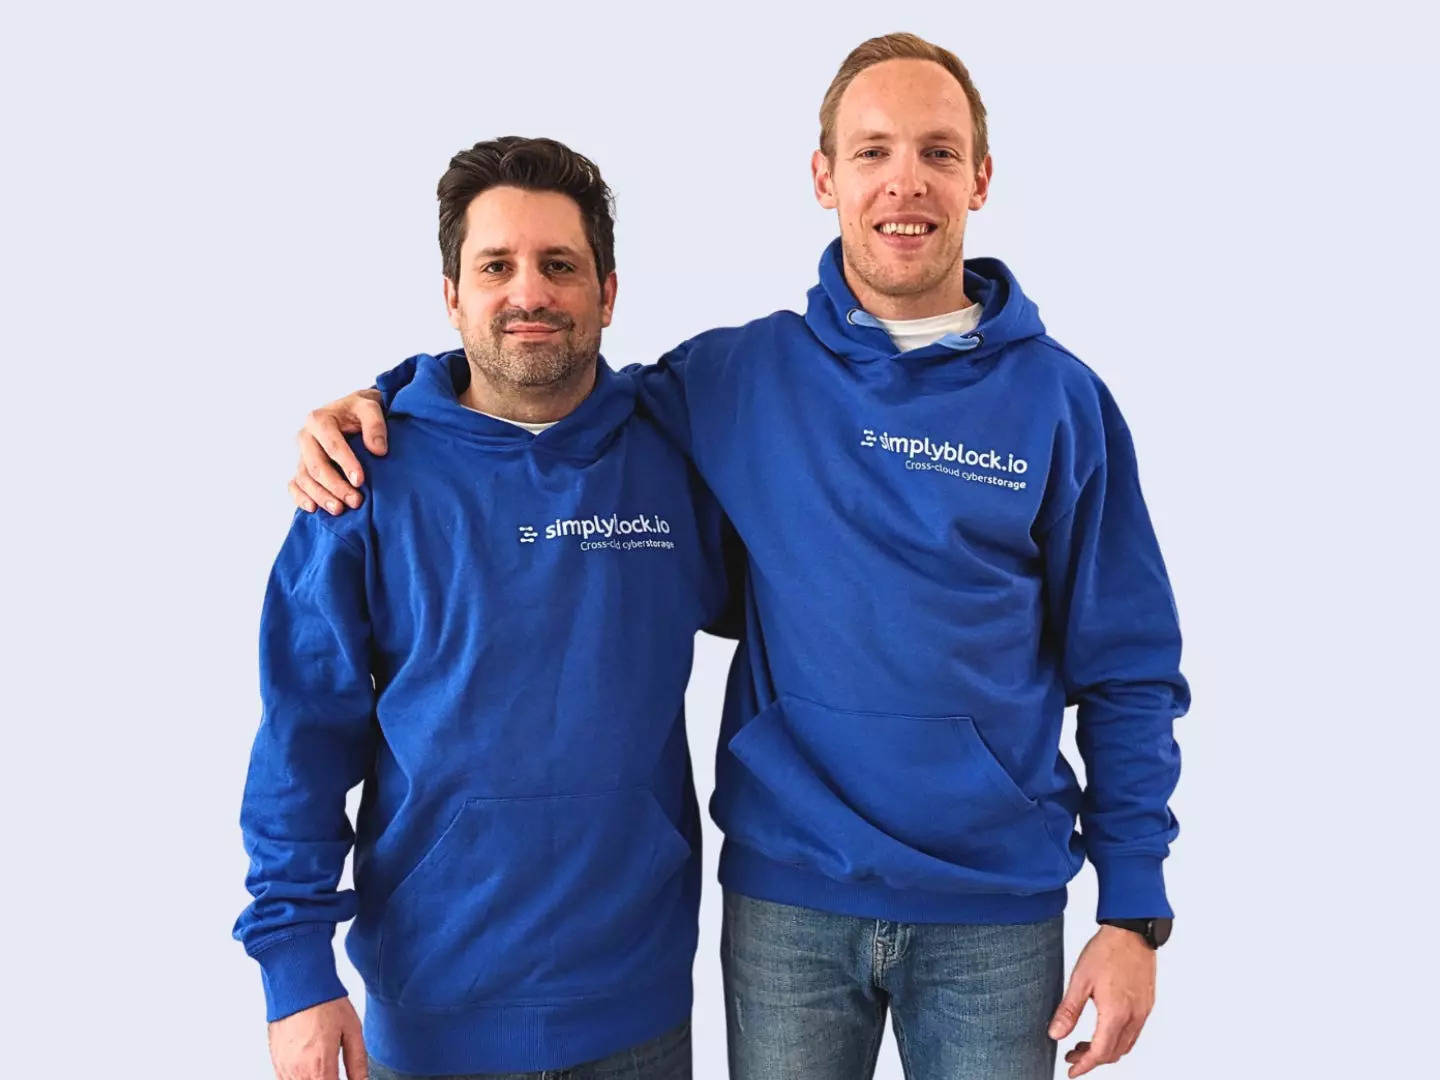 Simplyblock cofounders Michael Schmidt and Robert Pankow.